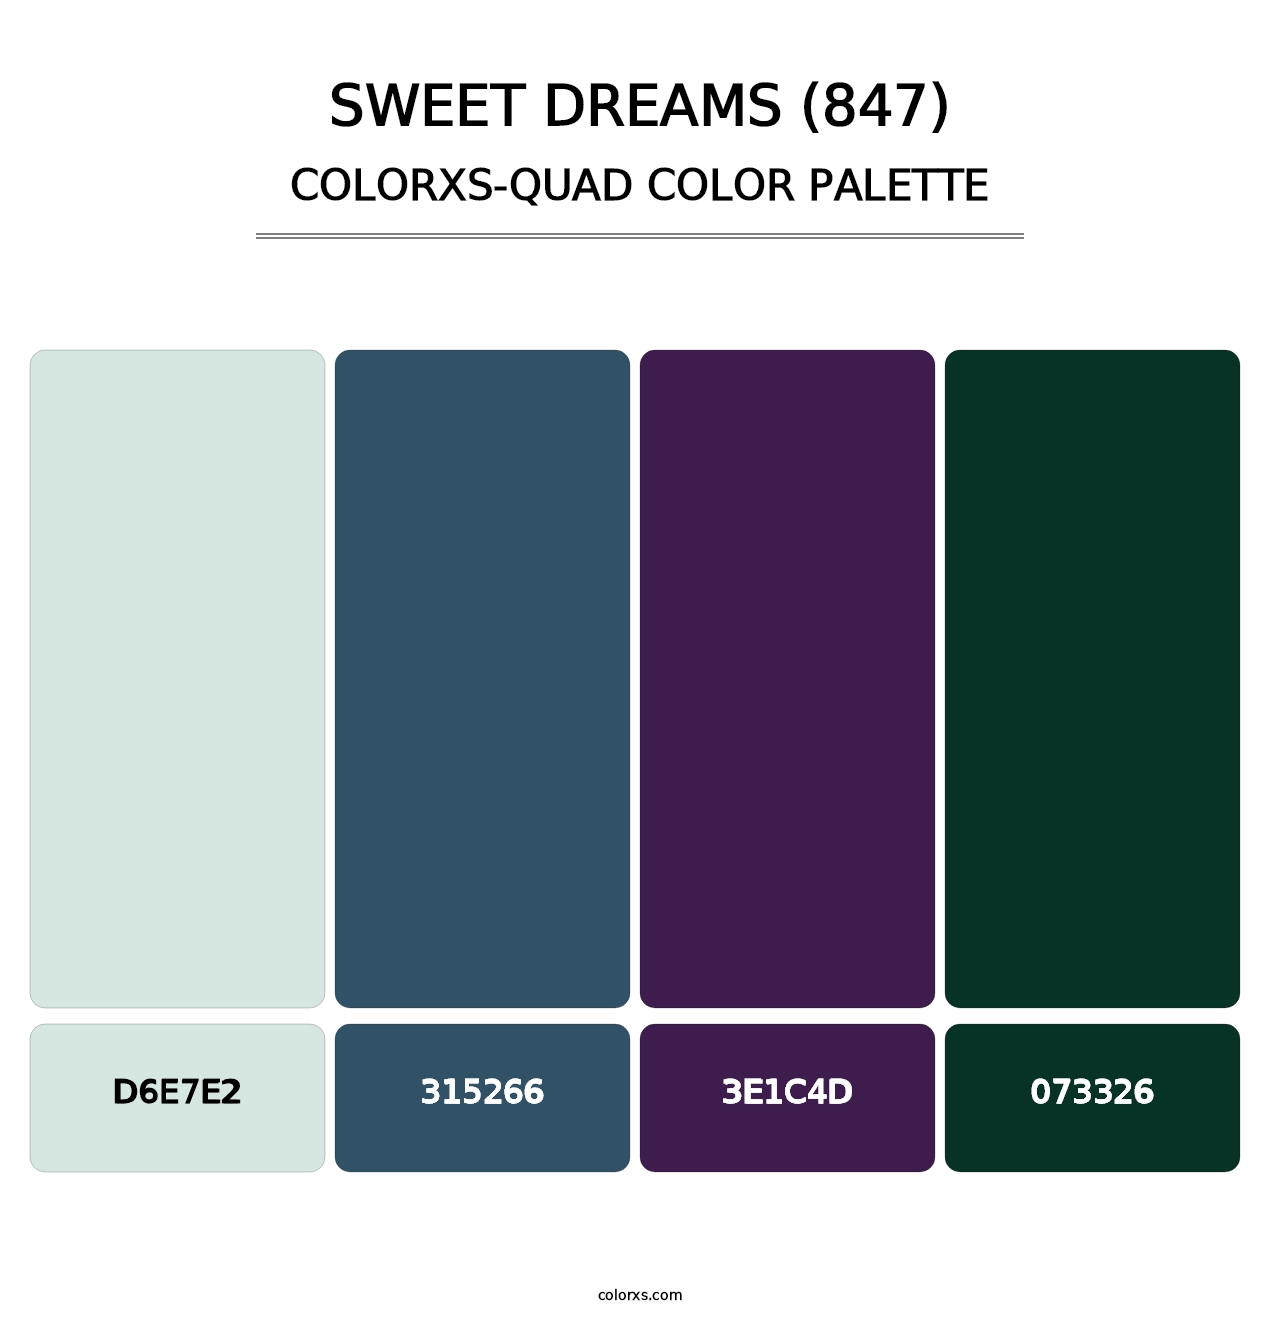 Sweet Dreams (847) - Colorxs Quad Palette